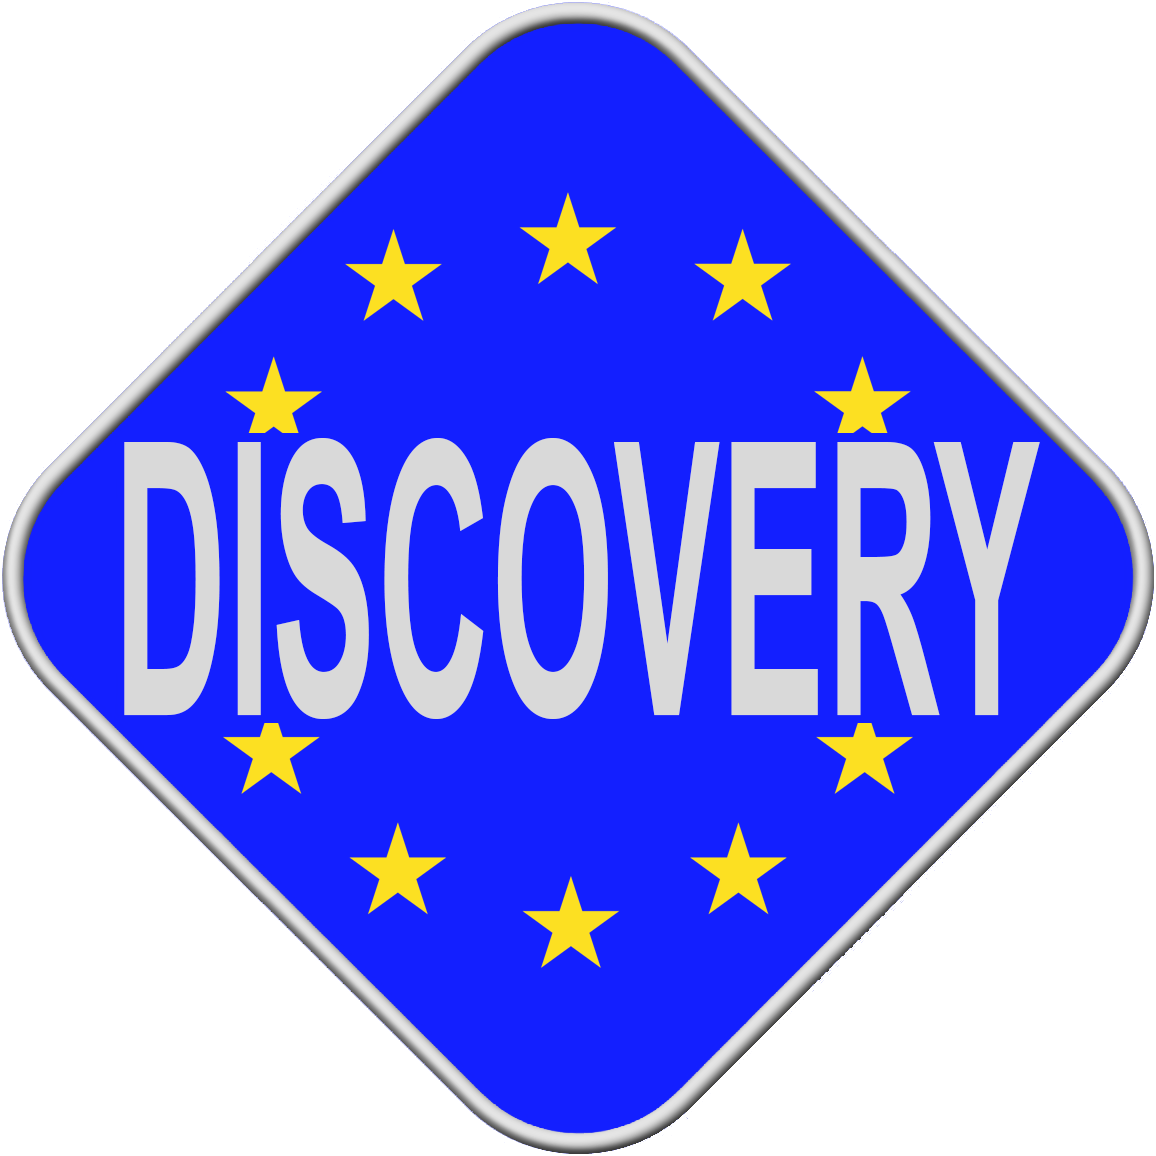 CÉLTÁVCSÖVEK - Discovery Optics Európa